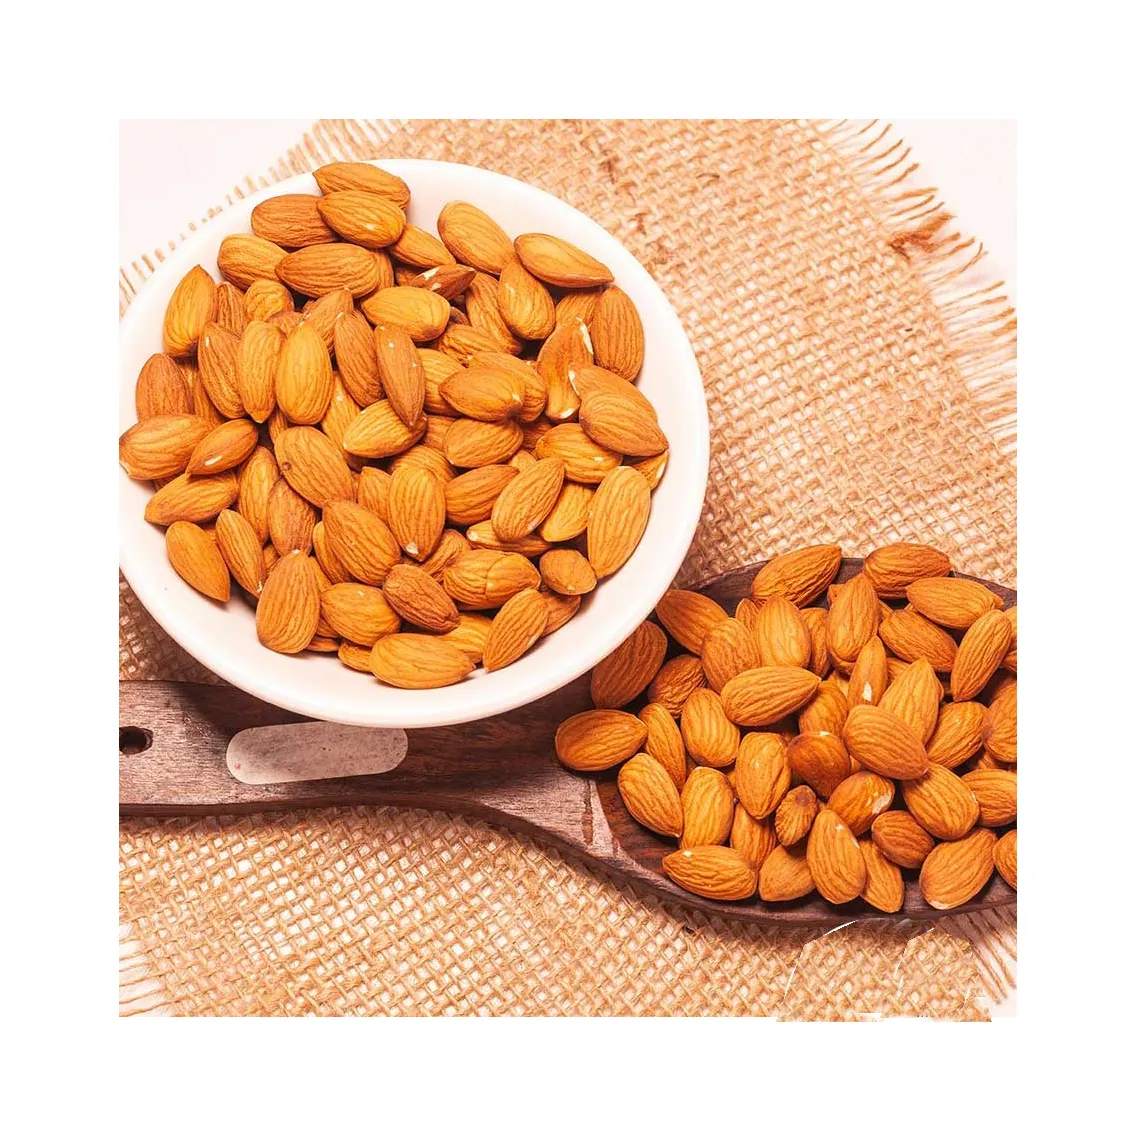 Chất lượng 100% Nguyên Hạnh nhân Nuts, ngọt ngào hạnh nhân và hạnh nhân hạt nhân cho bán